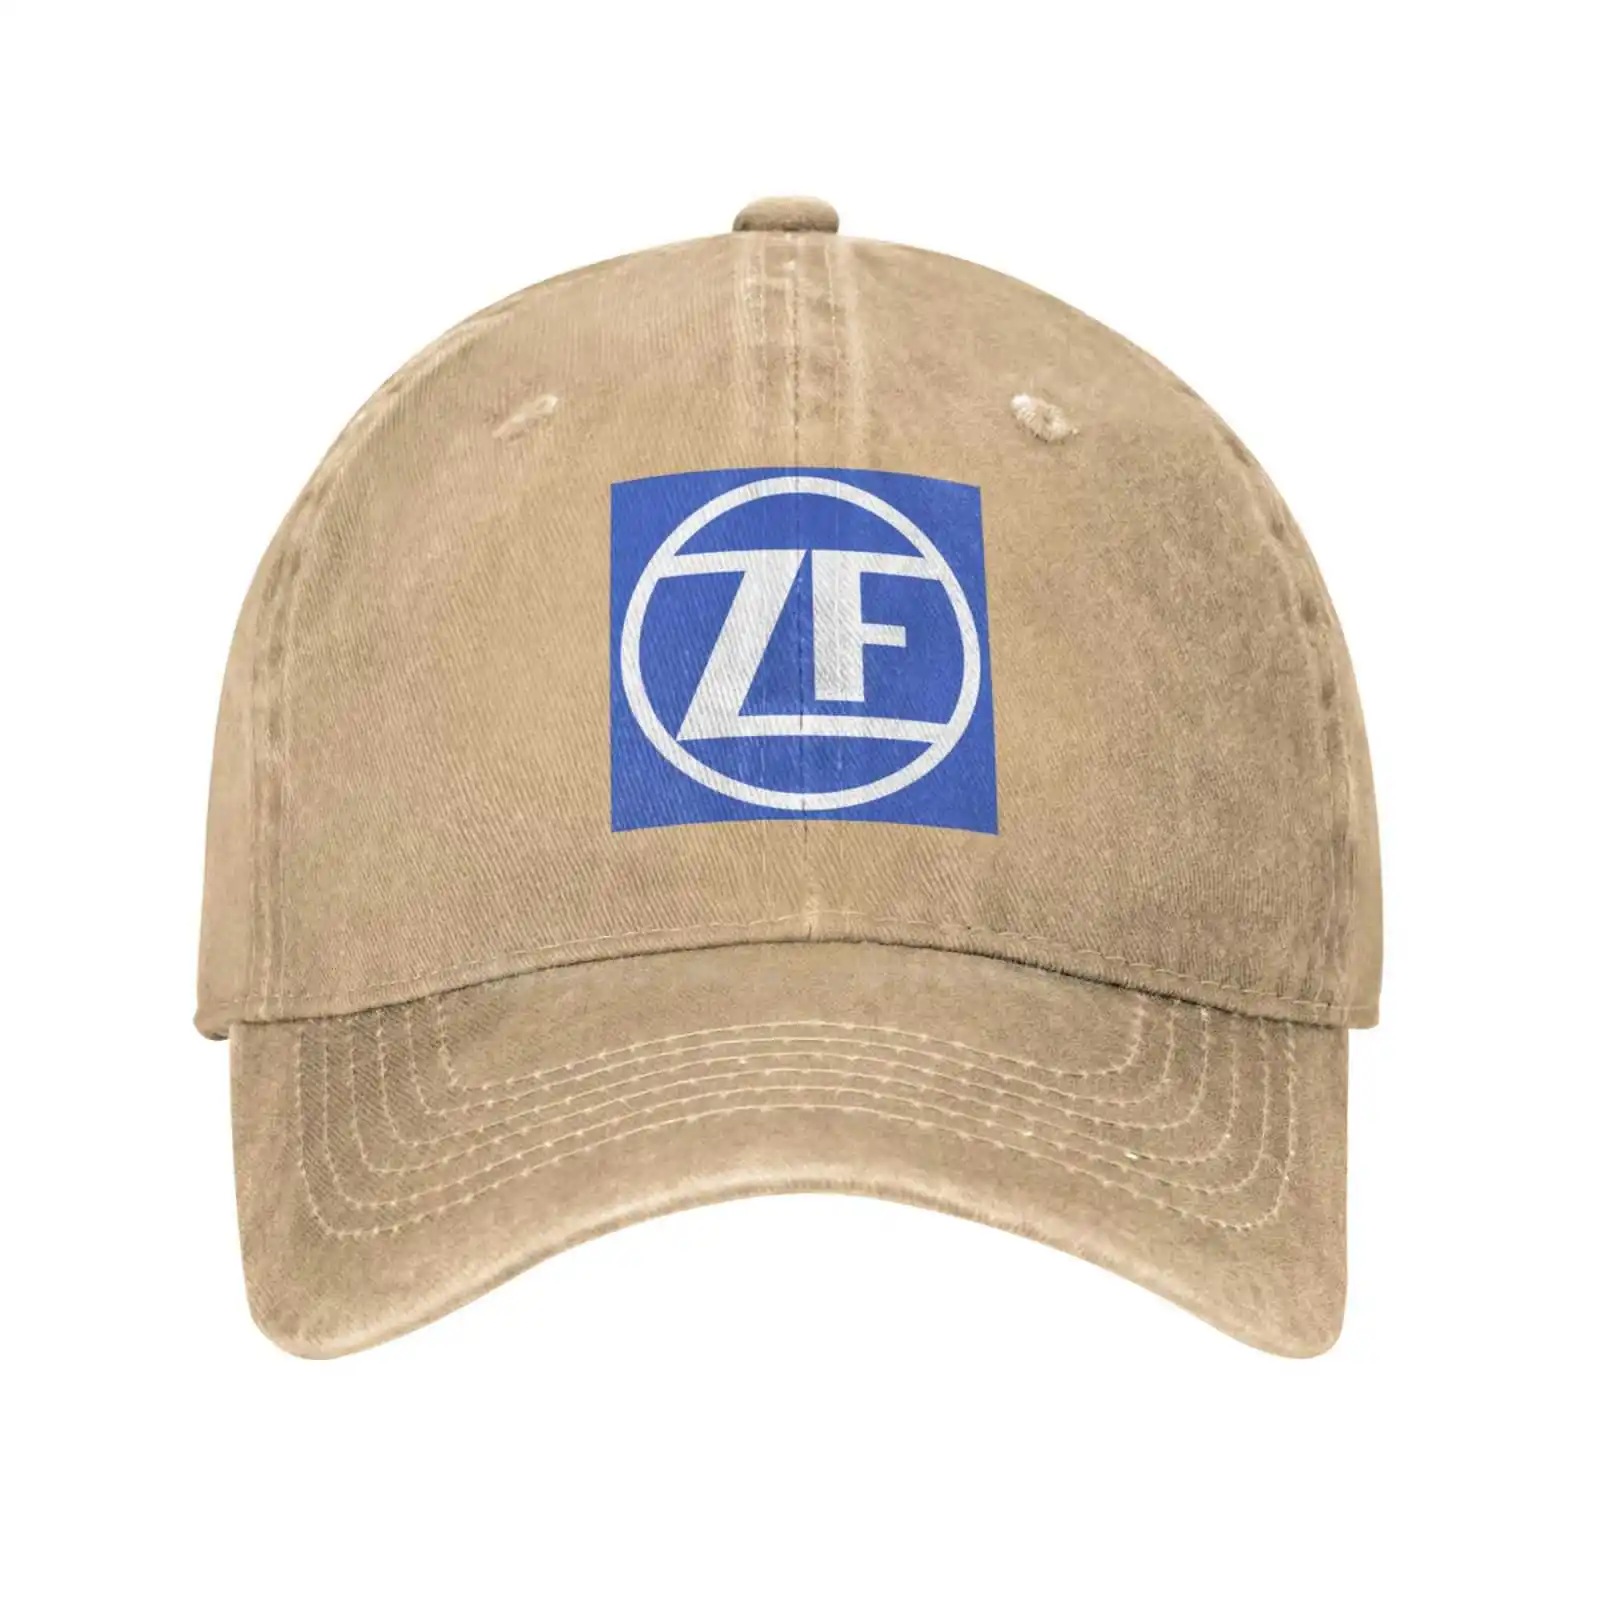 

Повседневная джинсовая бейсболка с принтом логотипа ZF